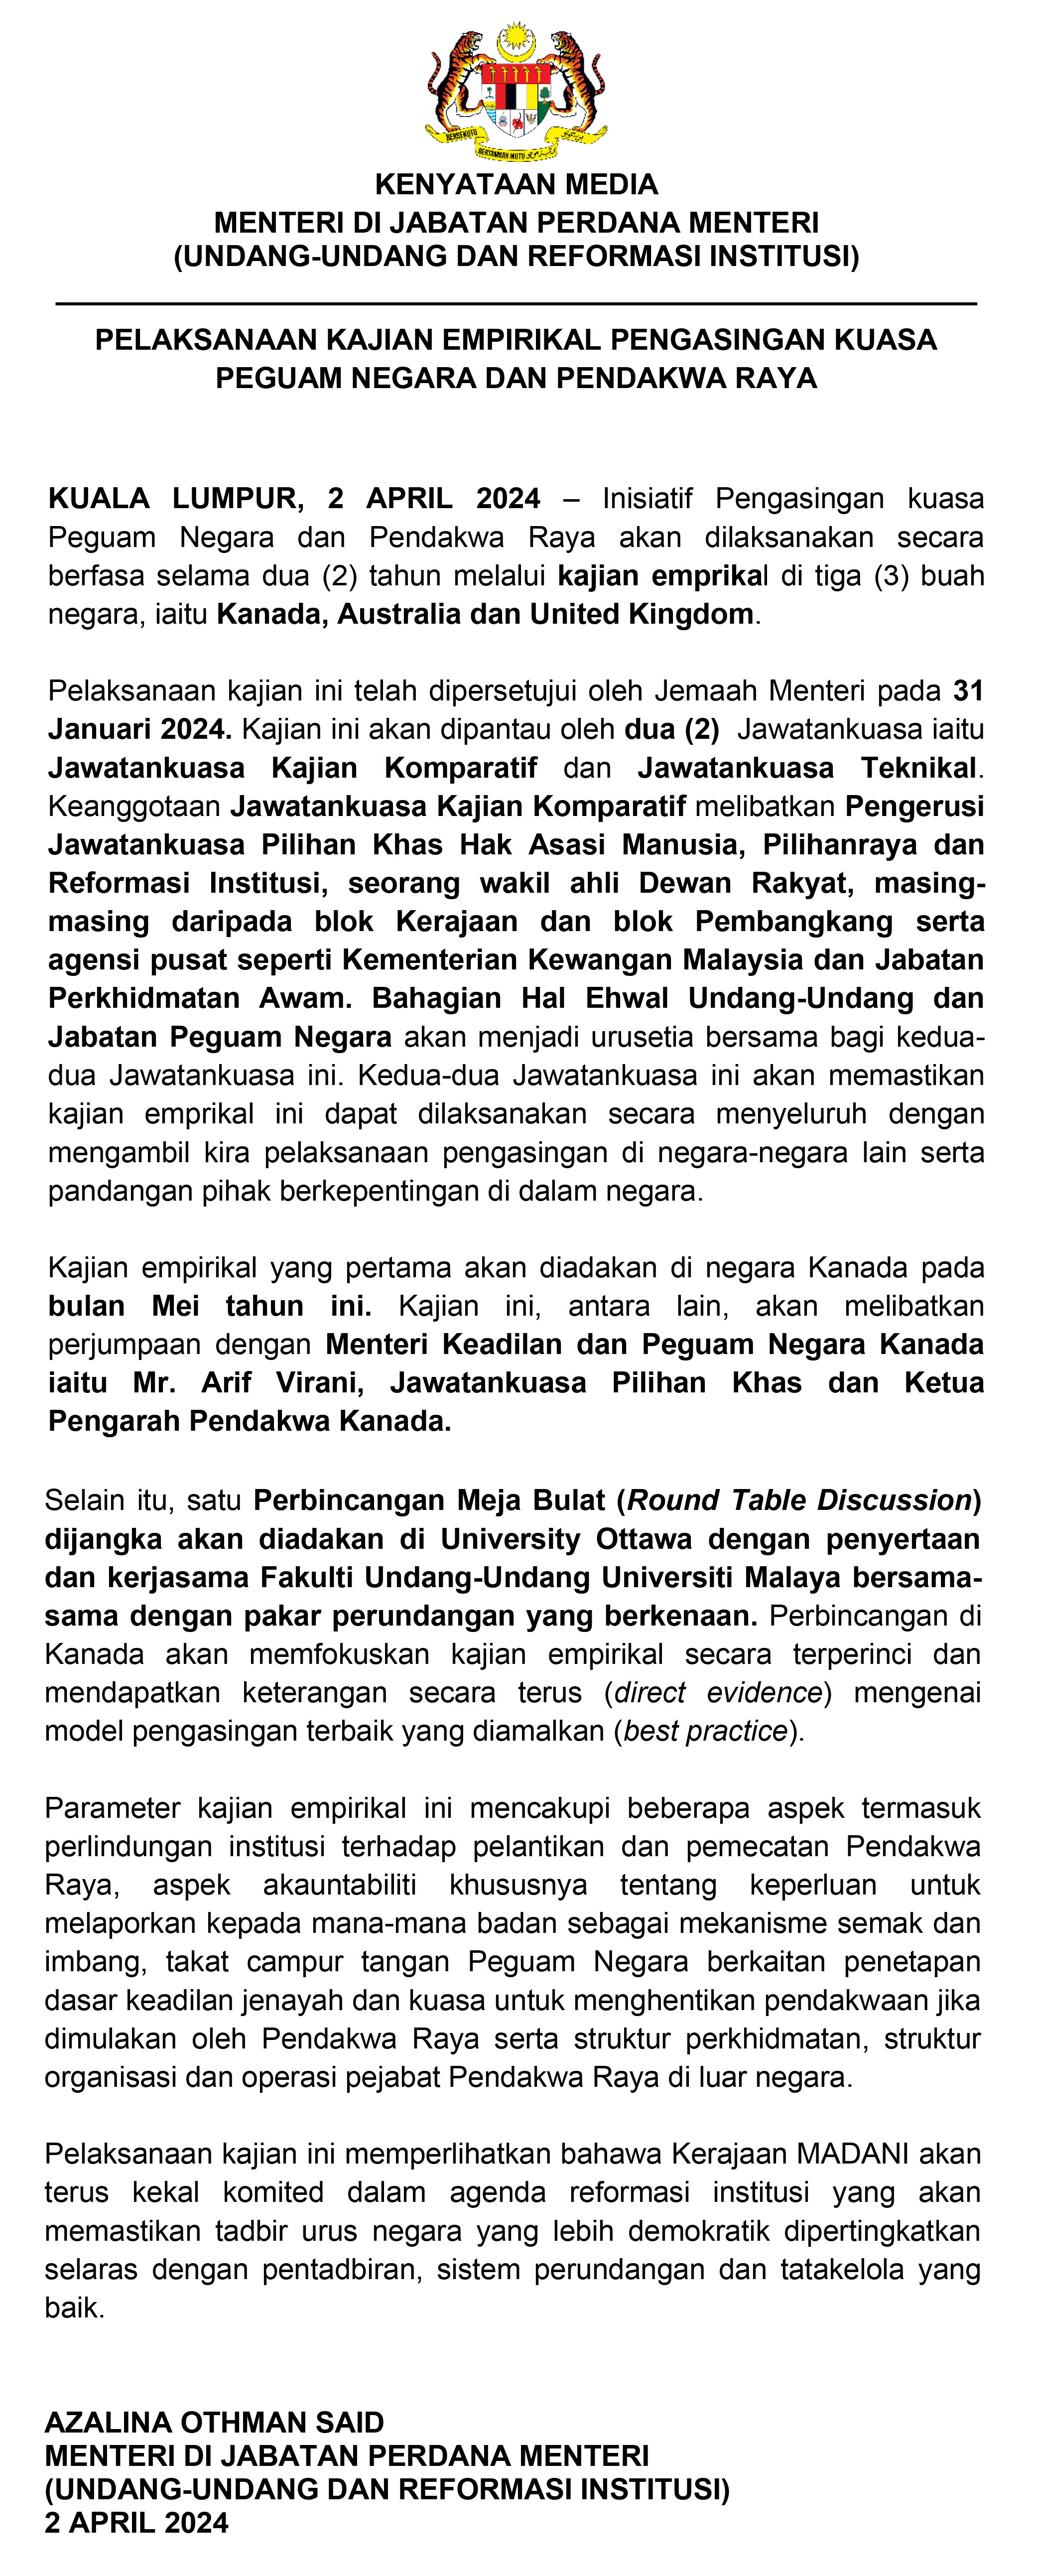 Kenyataan Media Kajian Empirikal Pengasingan Kuasa AG PP 2 April 2024